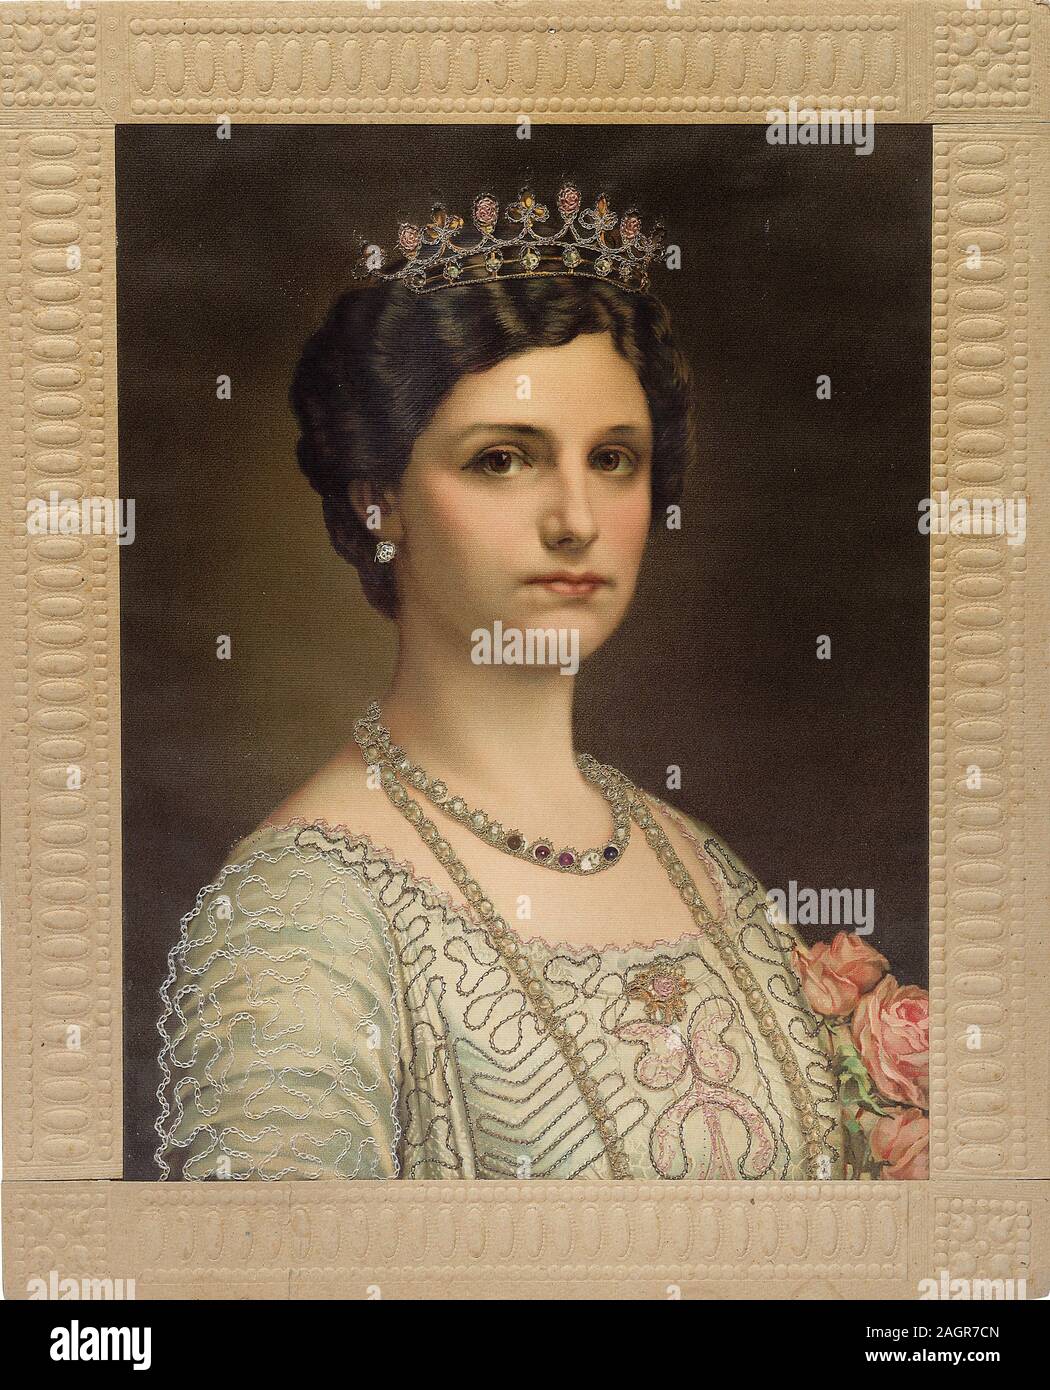 Kaiserin Zita von Österreich (1892-1989), Königin von Ungarn. Museum: private Sammlung. Autor: anonym. Stockfoto